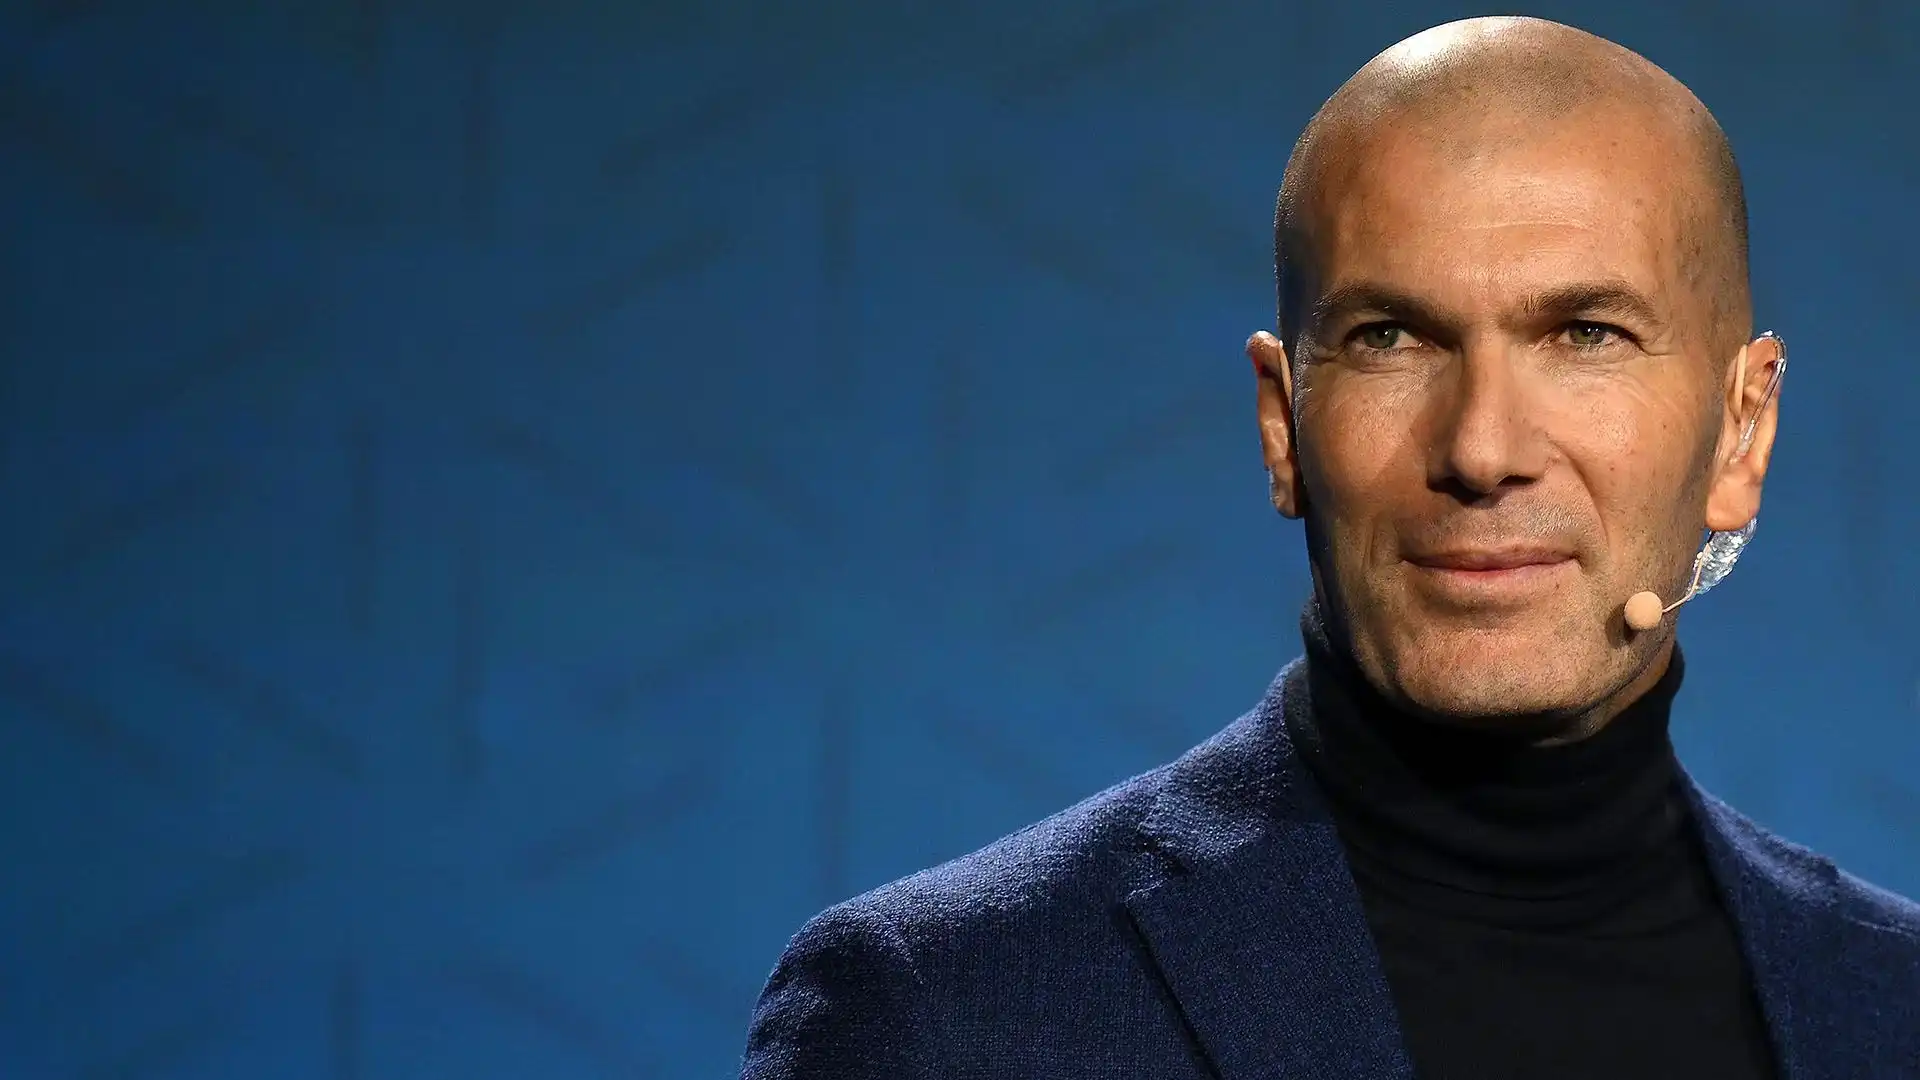 L'ex allenatore del Real Madrid, che è fermo dal 2021, ha chiesto informazioni ad una leggenda del Bayern Monaco